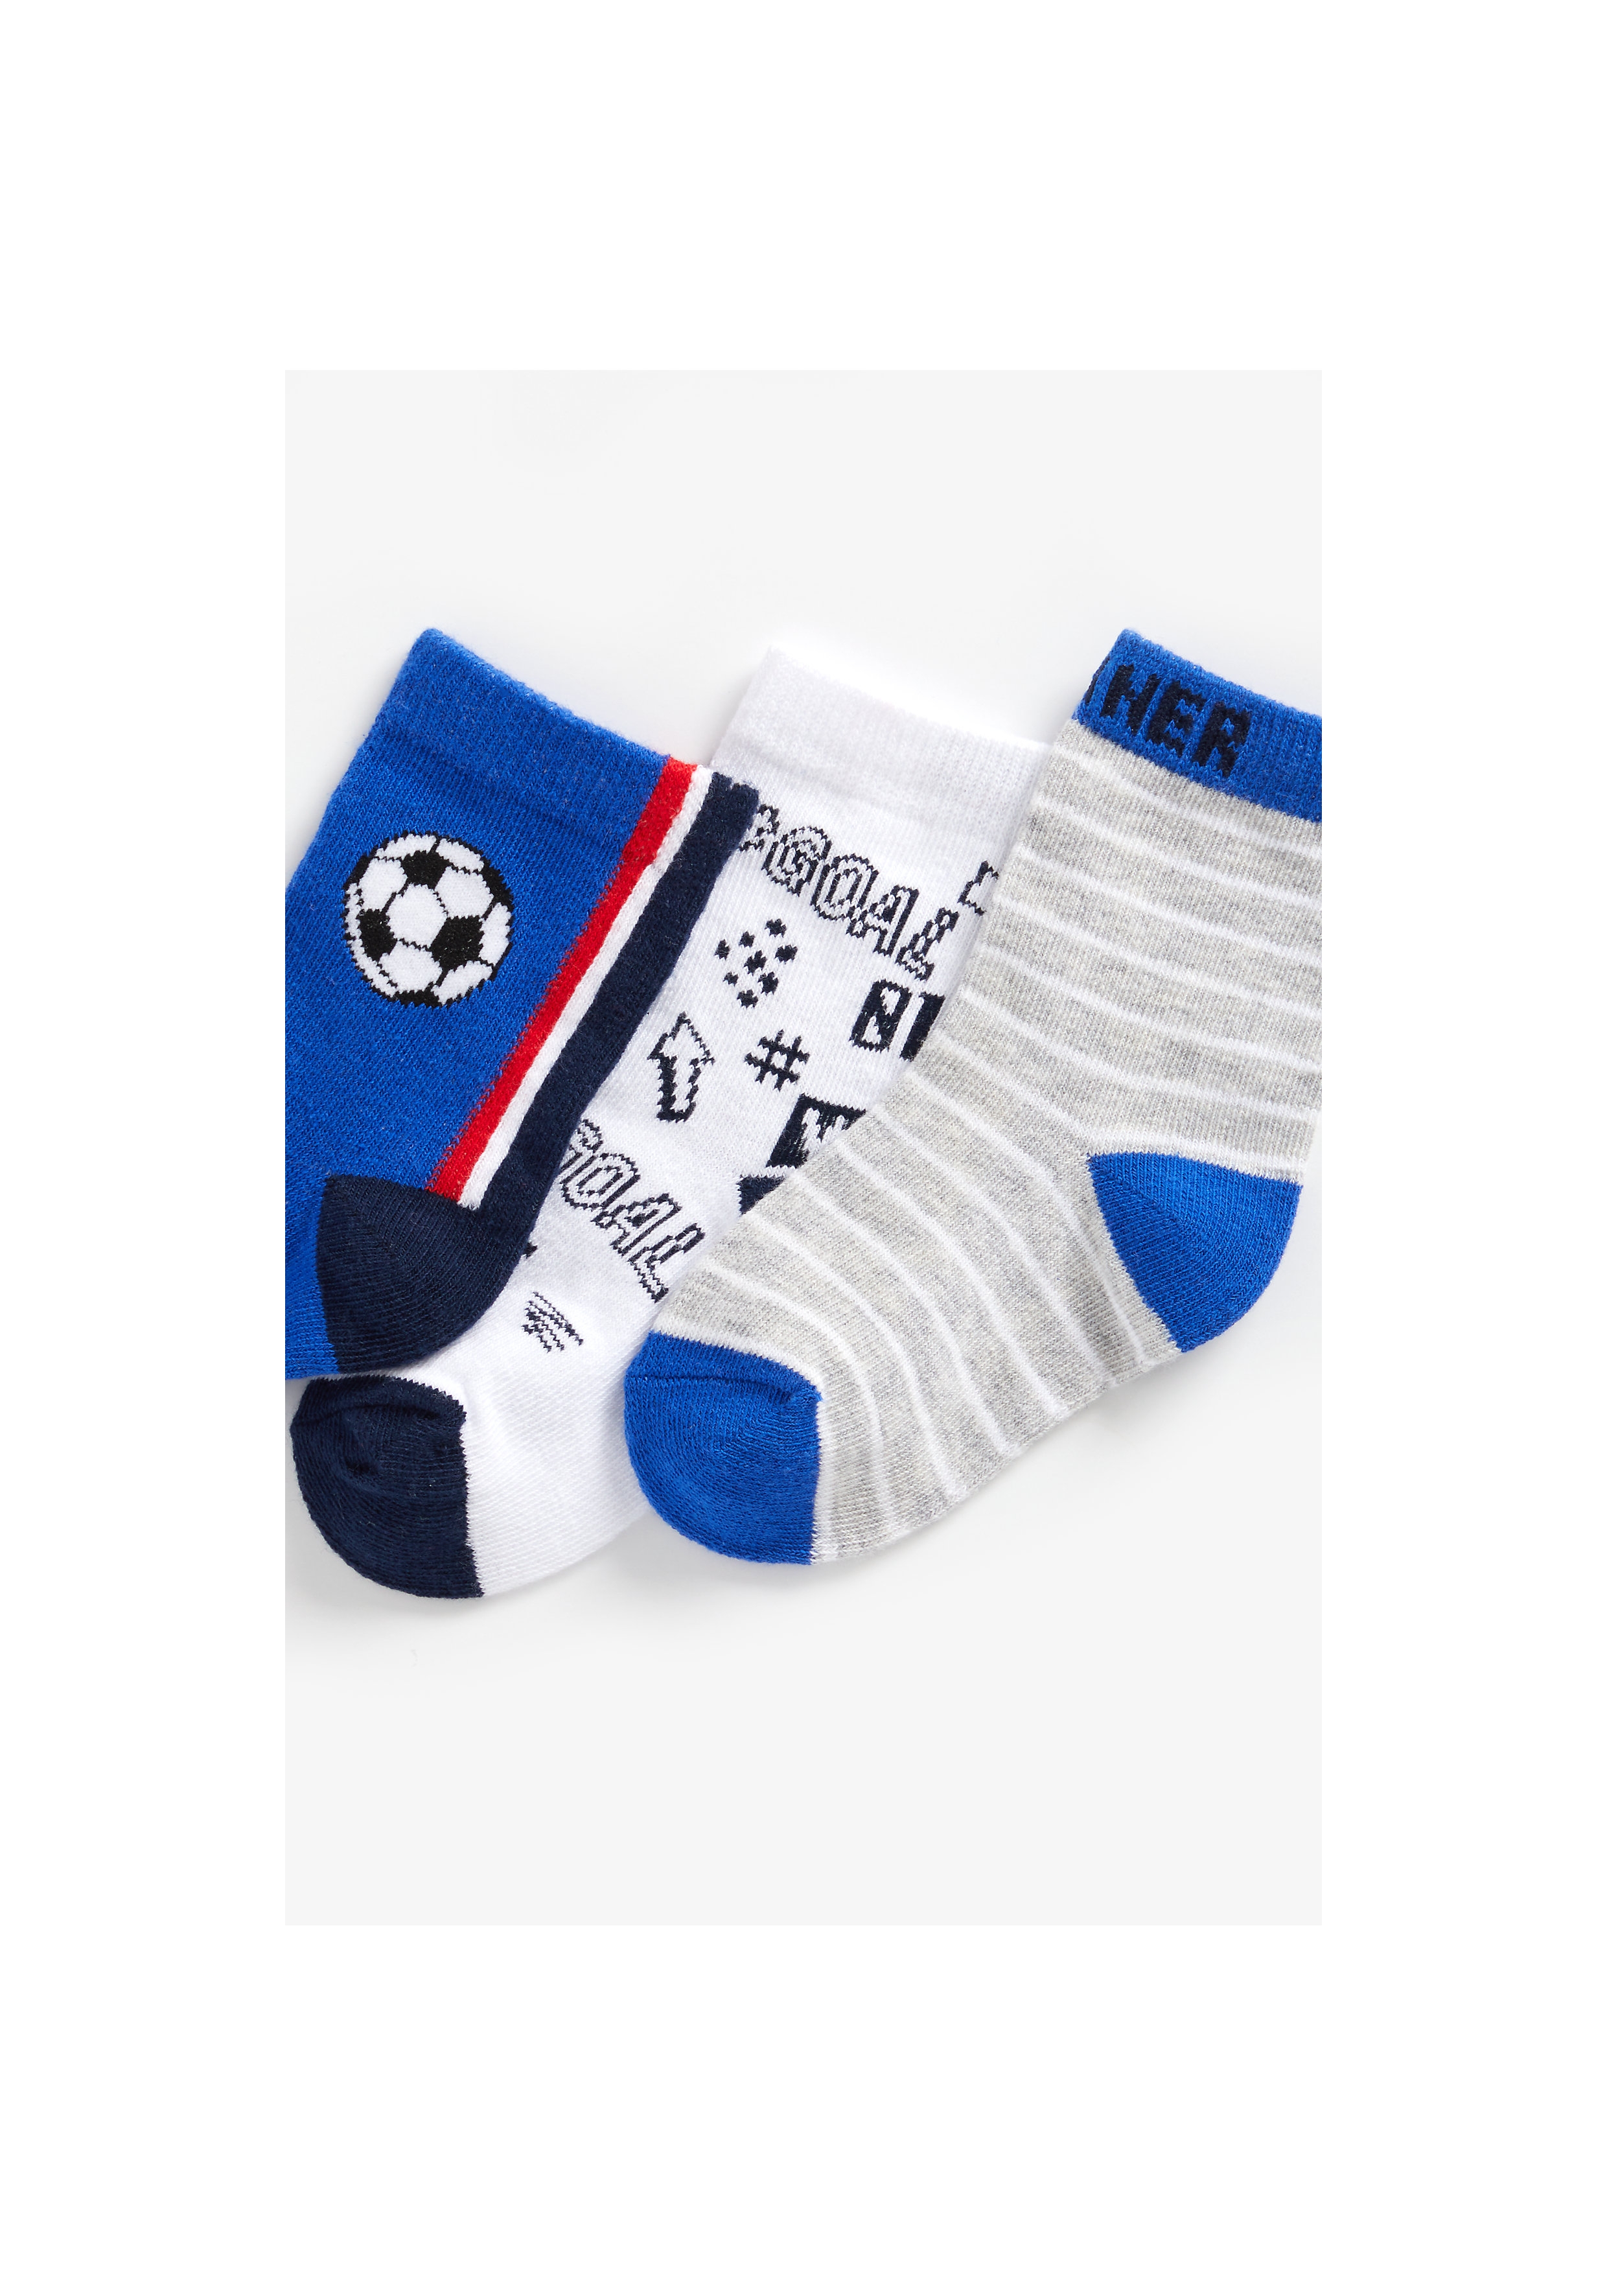 Boys Socks Football Design - Pack Of 3 - Blue